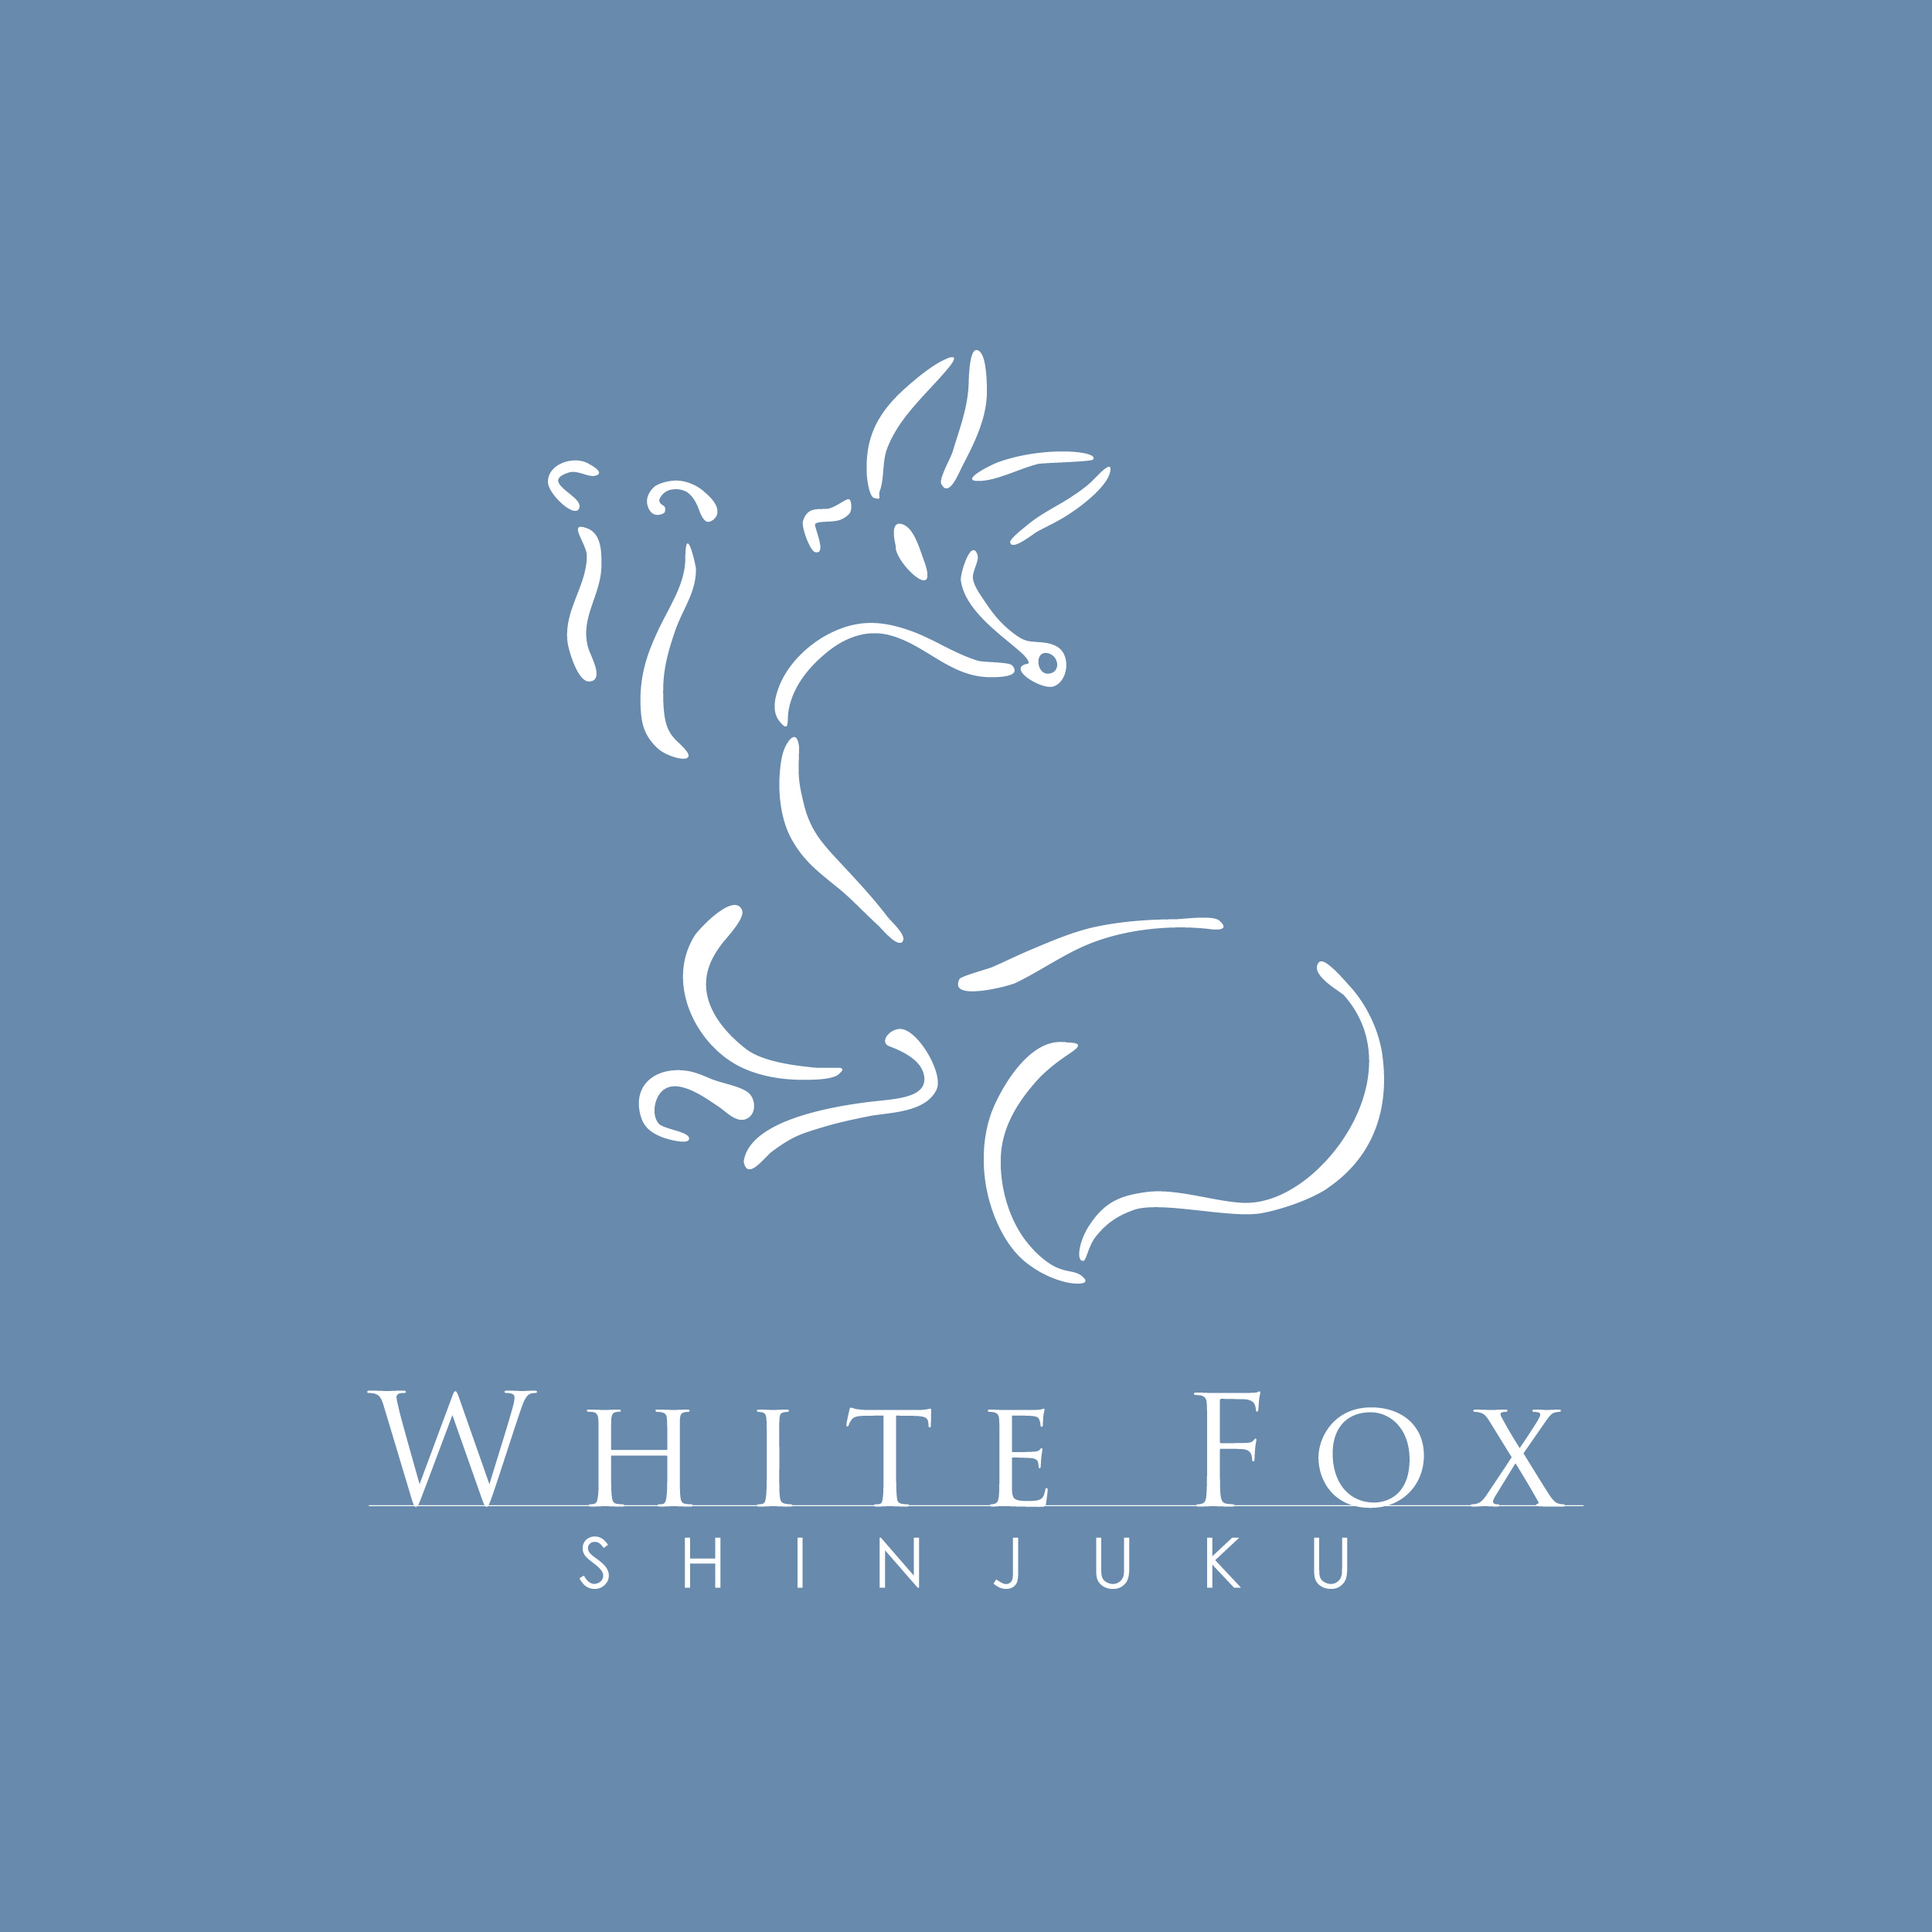 White Fox Shinjuku